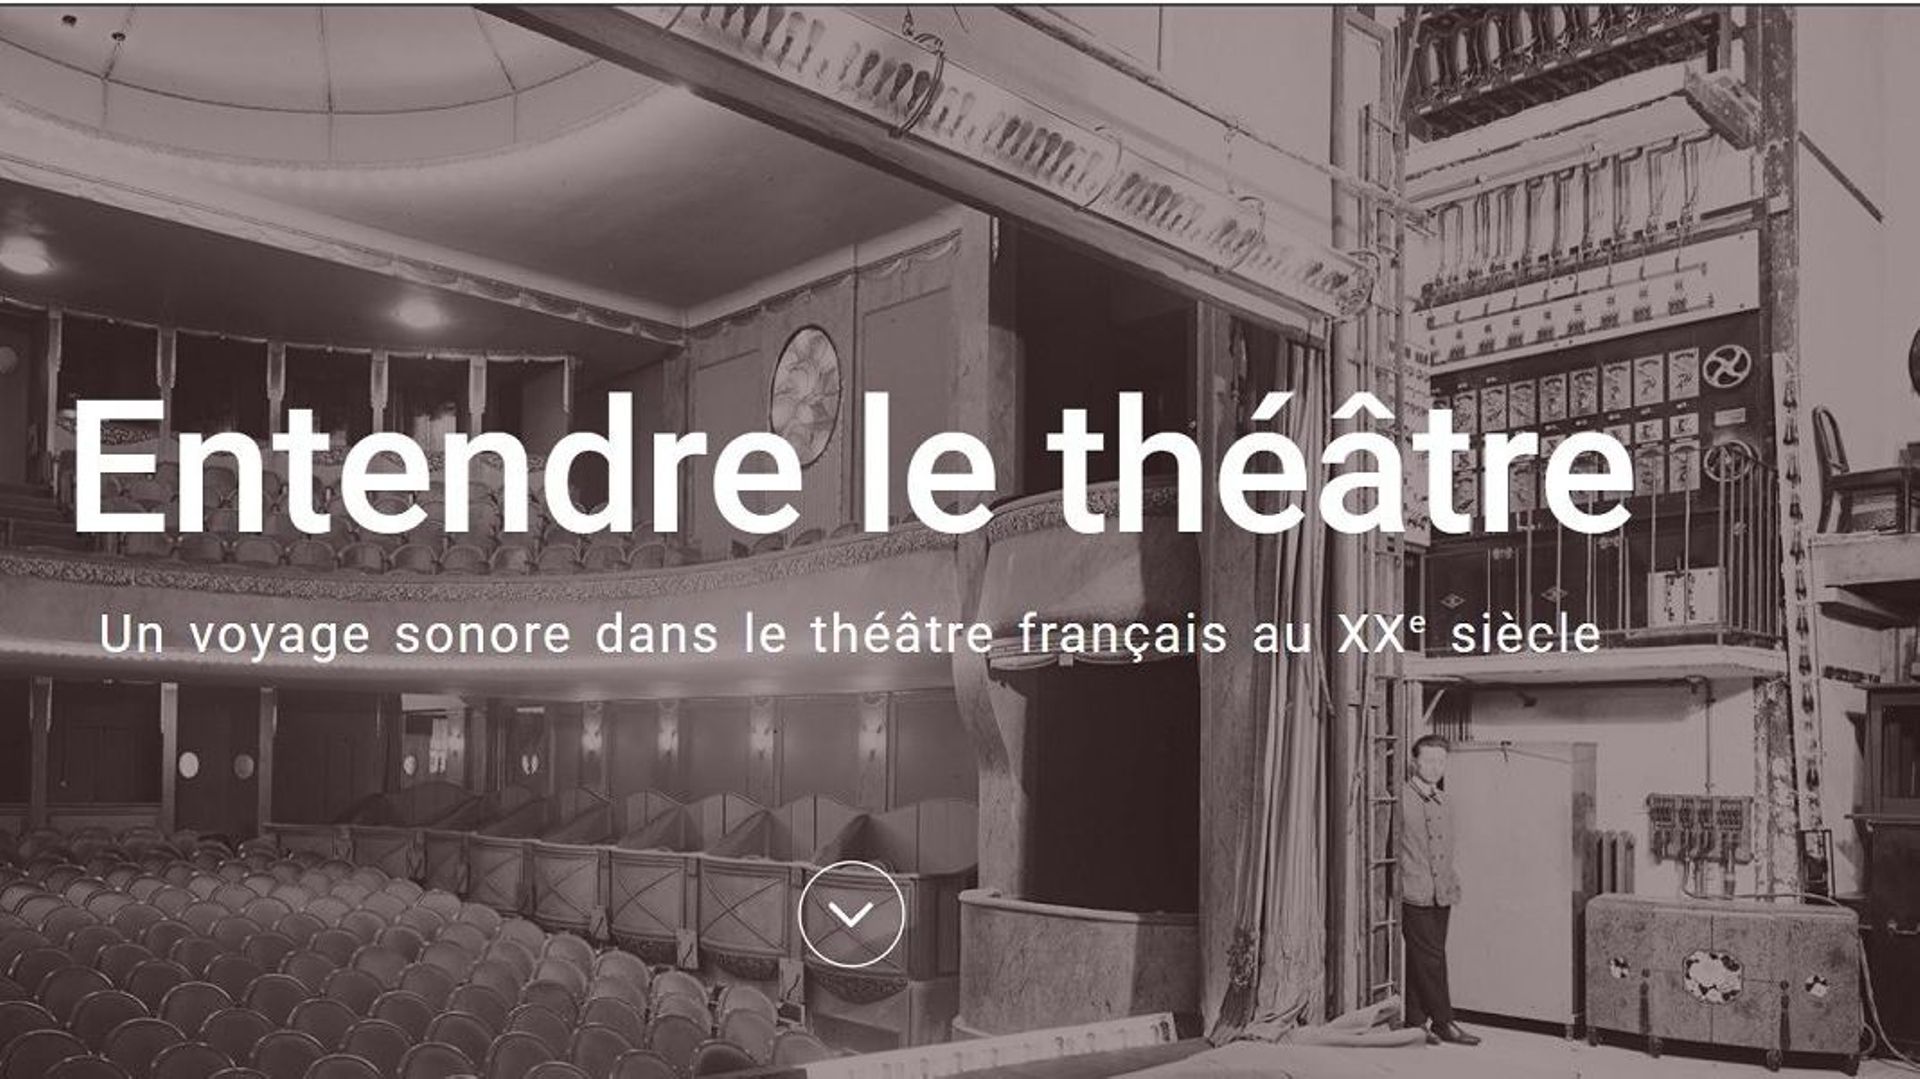 Entendre le théâtre du 20e siècle, c'est désormais possible grâce à la Bibliothèque Nationale de France